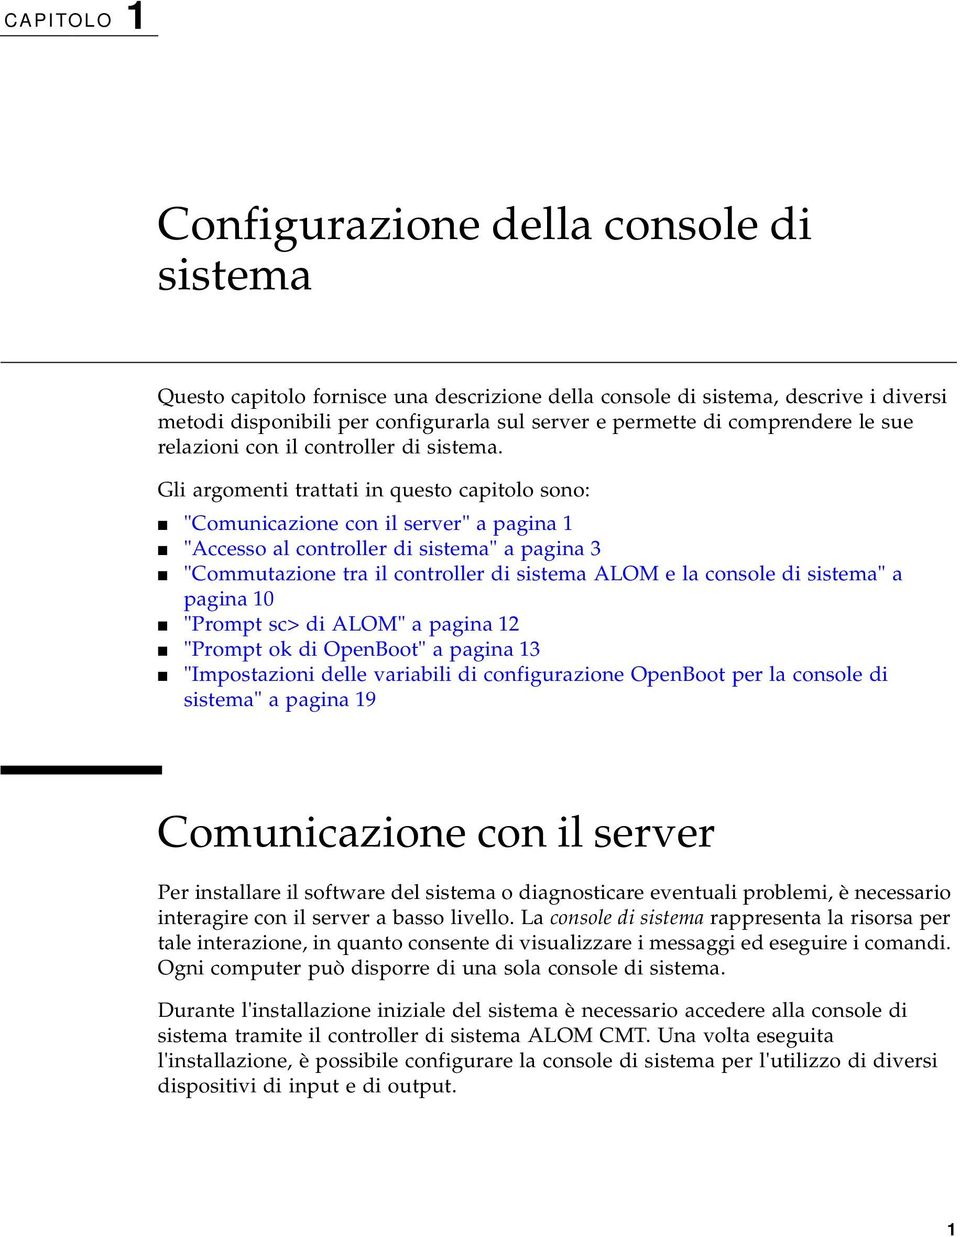 Gli argomenti trattati in questo capitolo sono: "Comunicazione con il server" a pagina 1 "Accesso al controller di sistema" a pagina 3 "Commutazione tra il controller di sistema ALOM e la console di